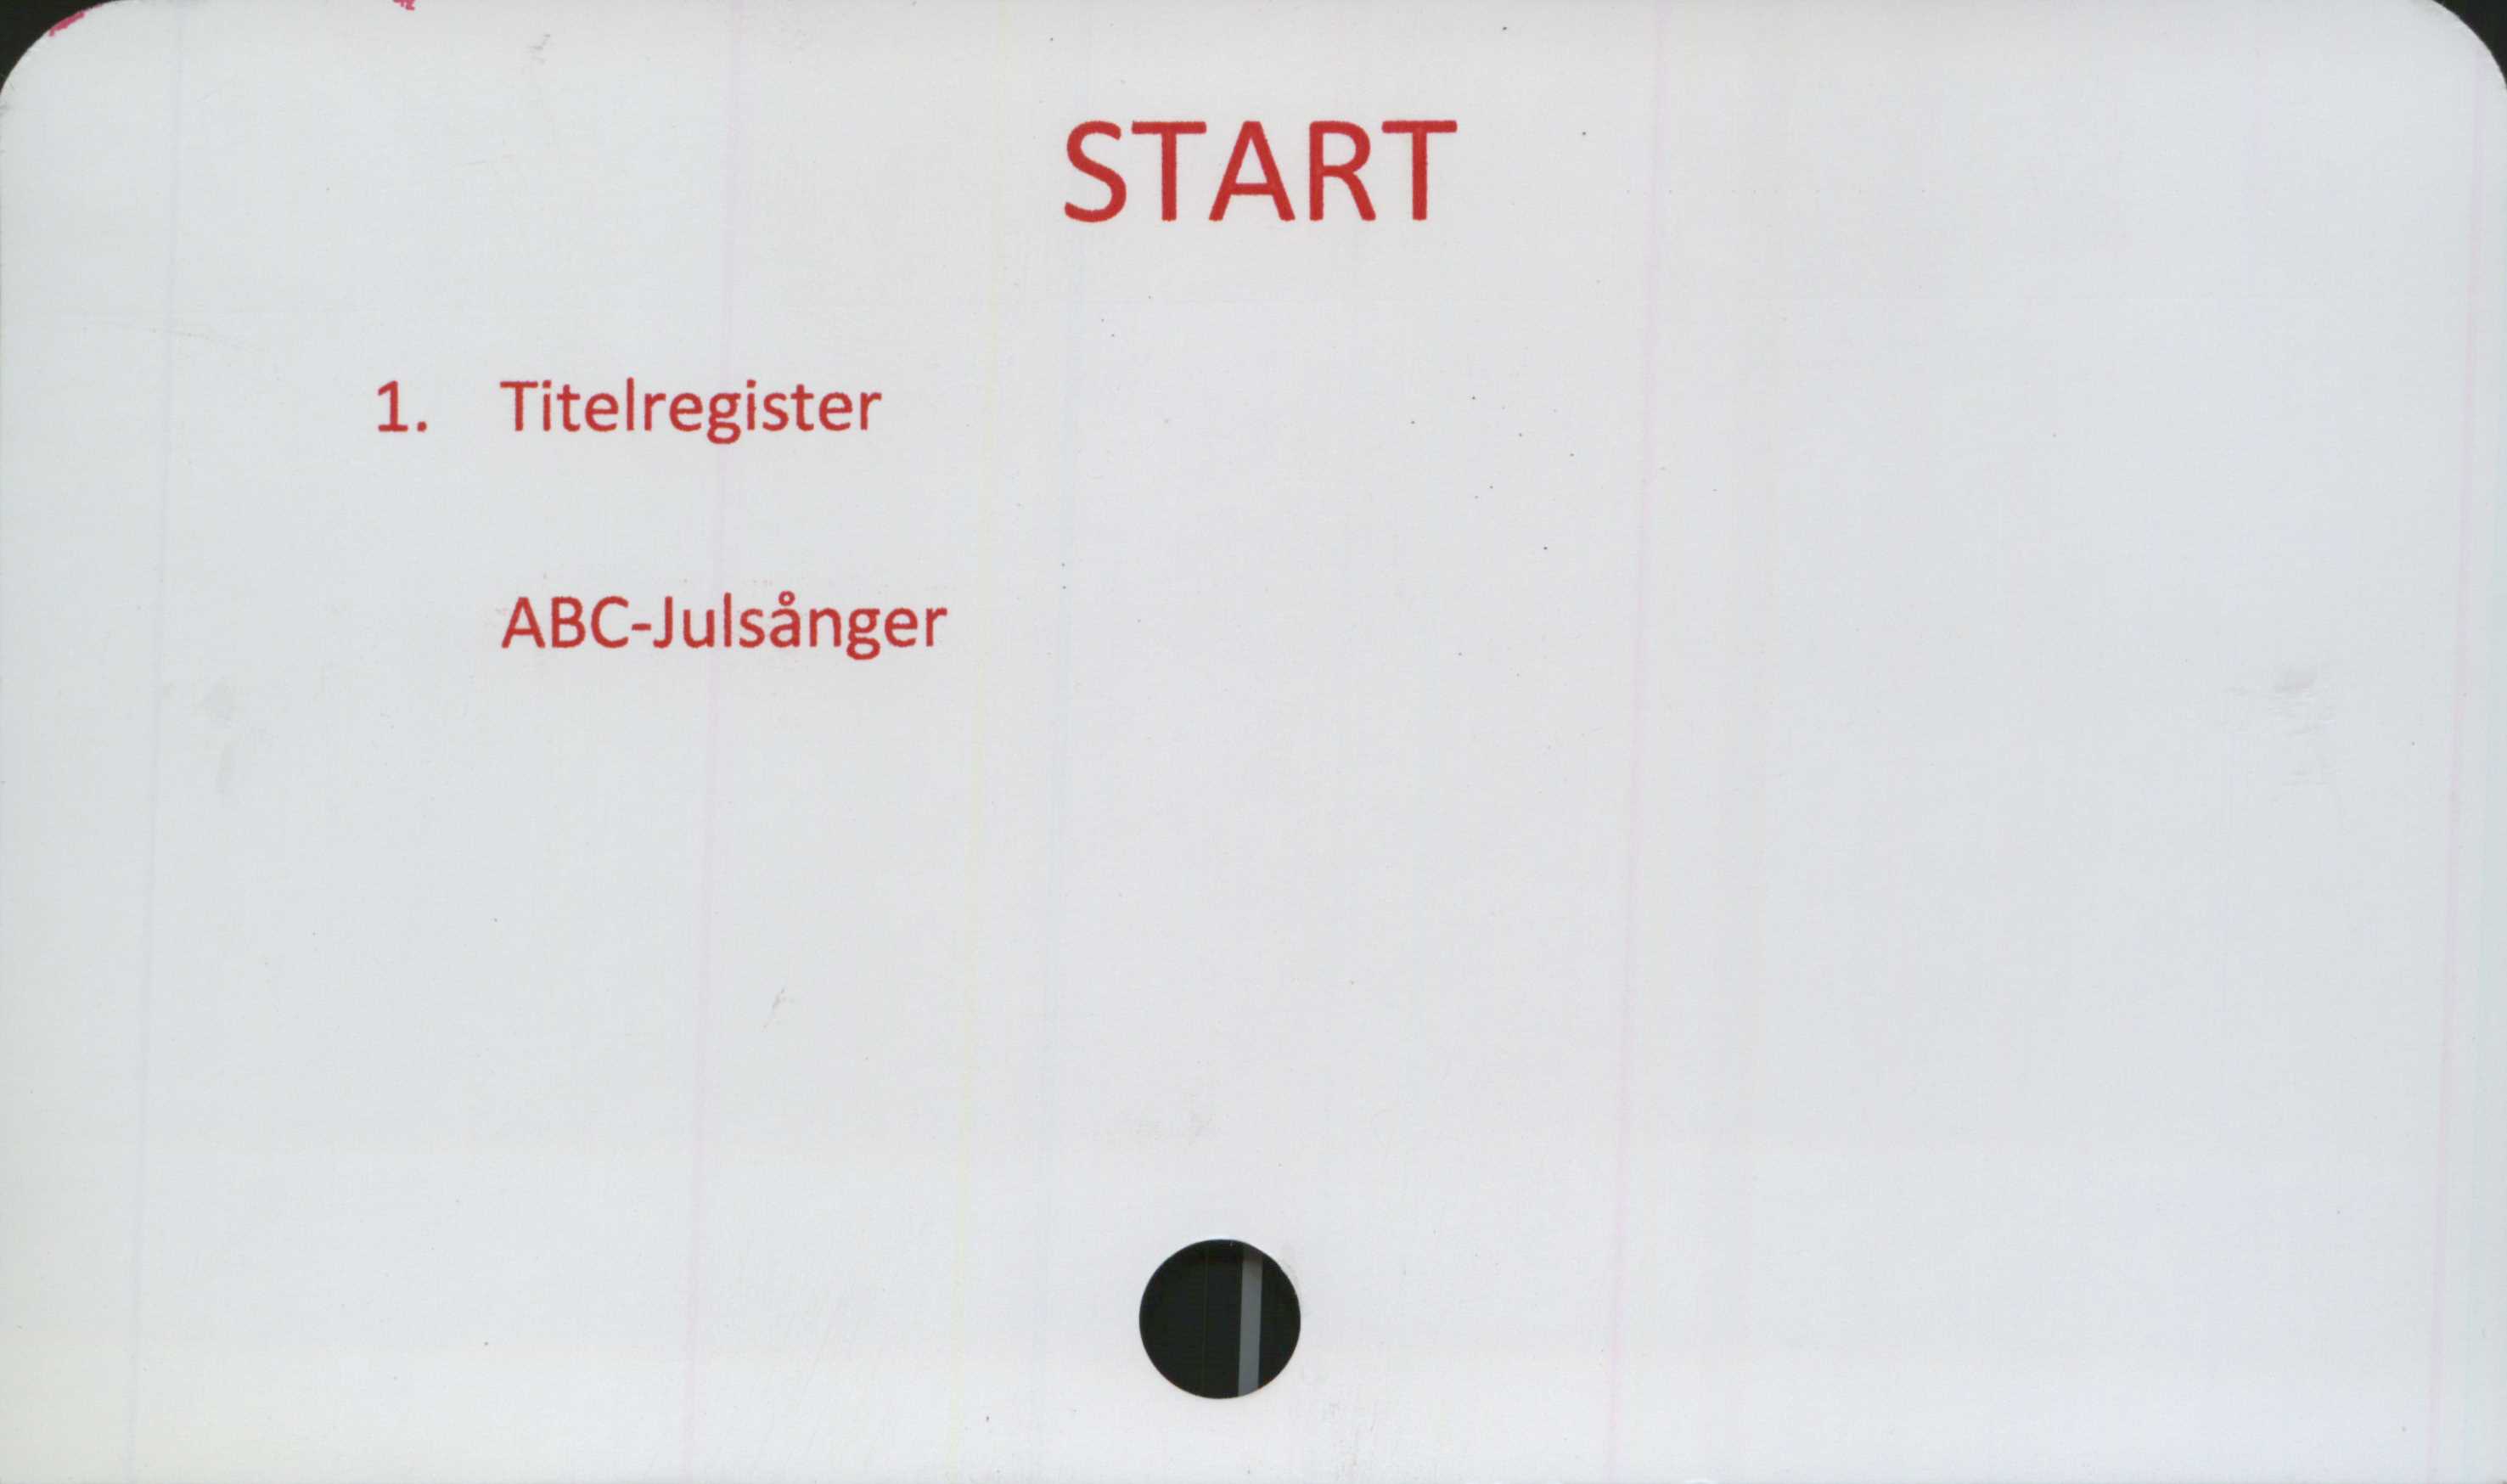 ﻿START ﻿START 

1. Titelregister

ABC-Julsånger